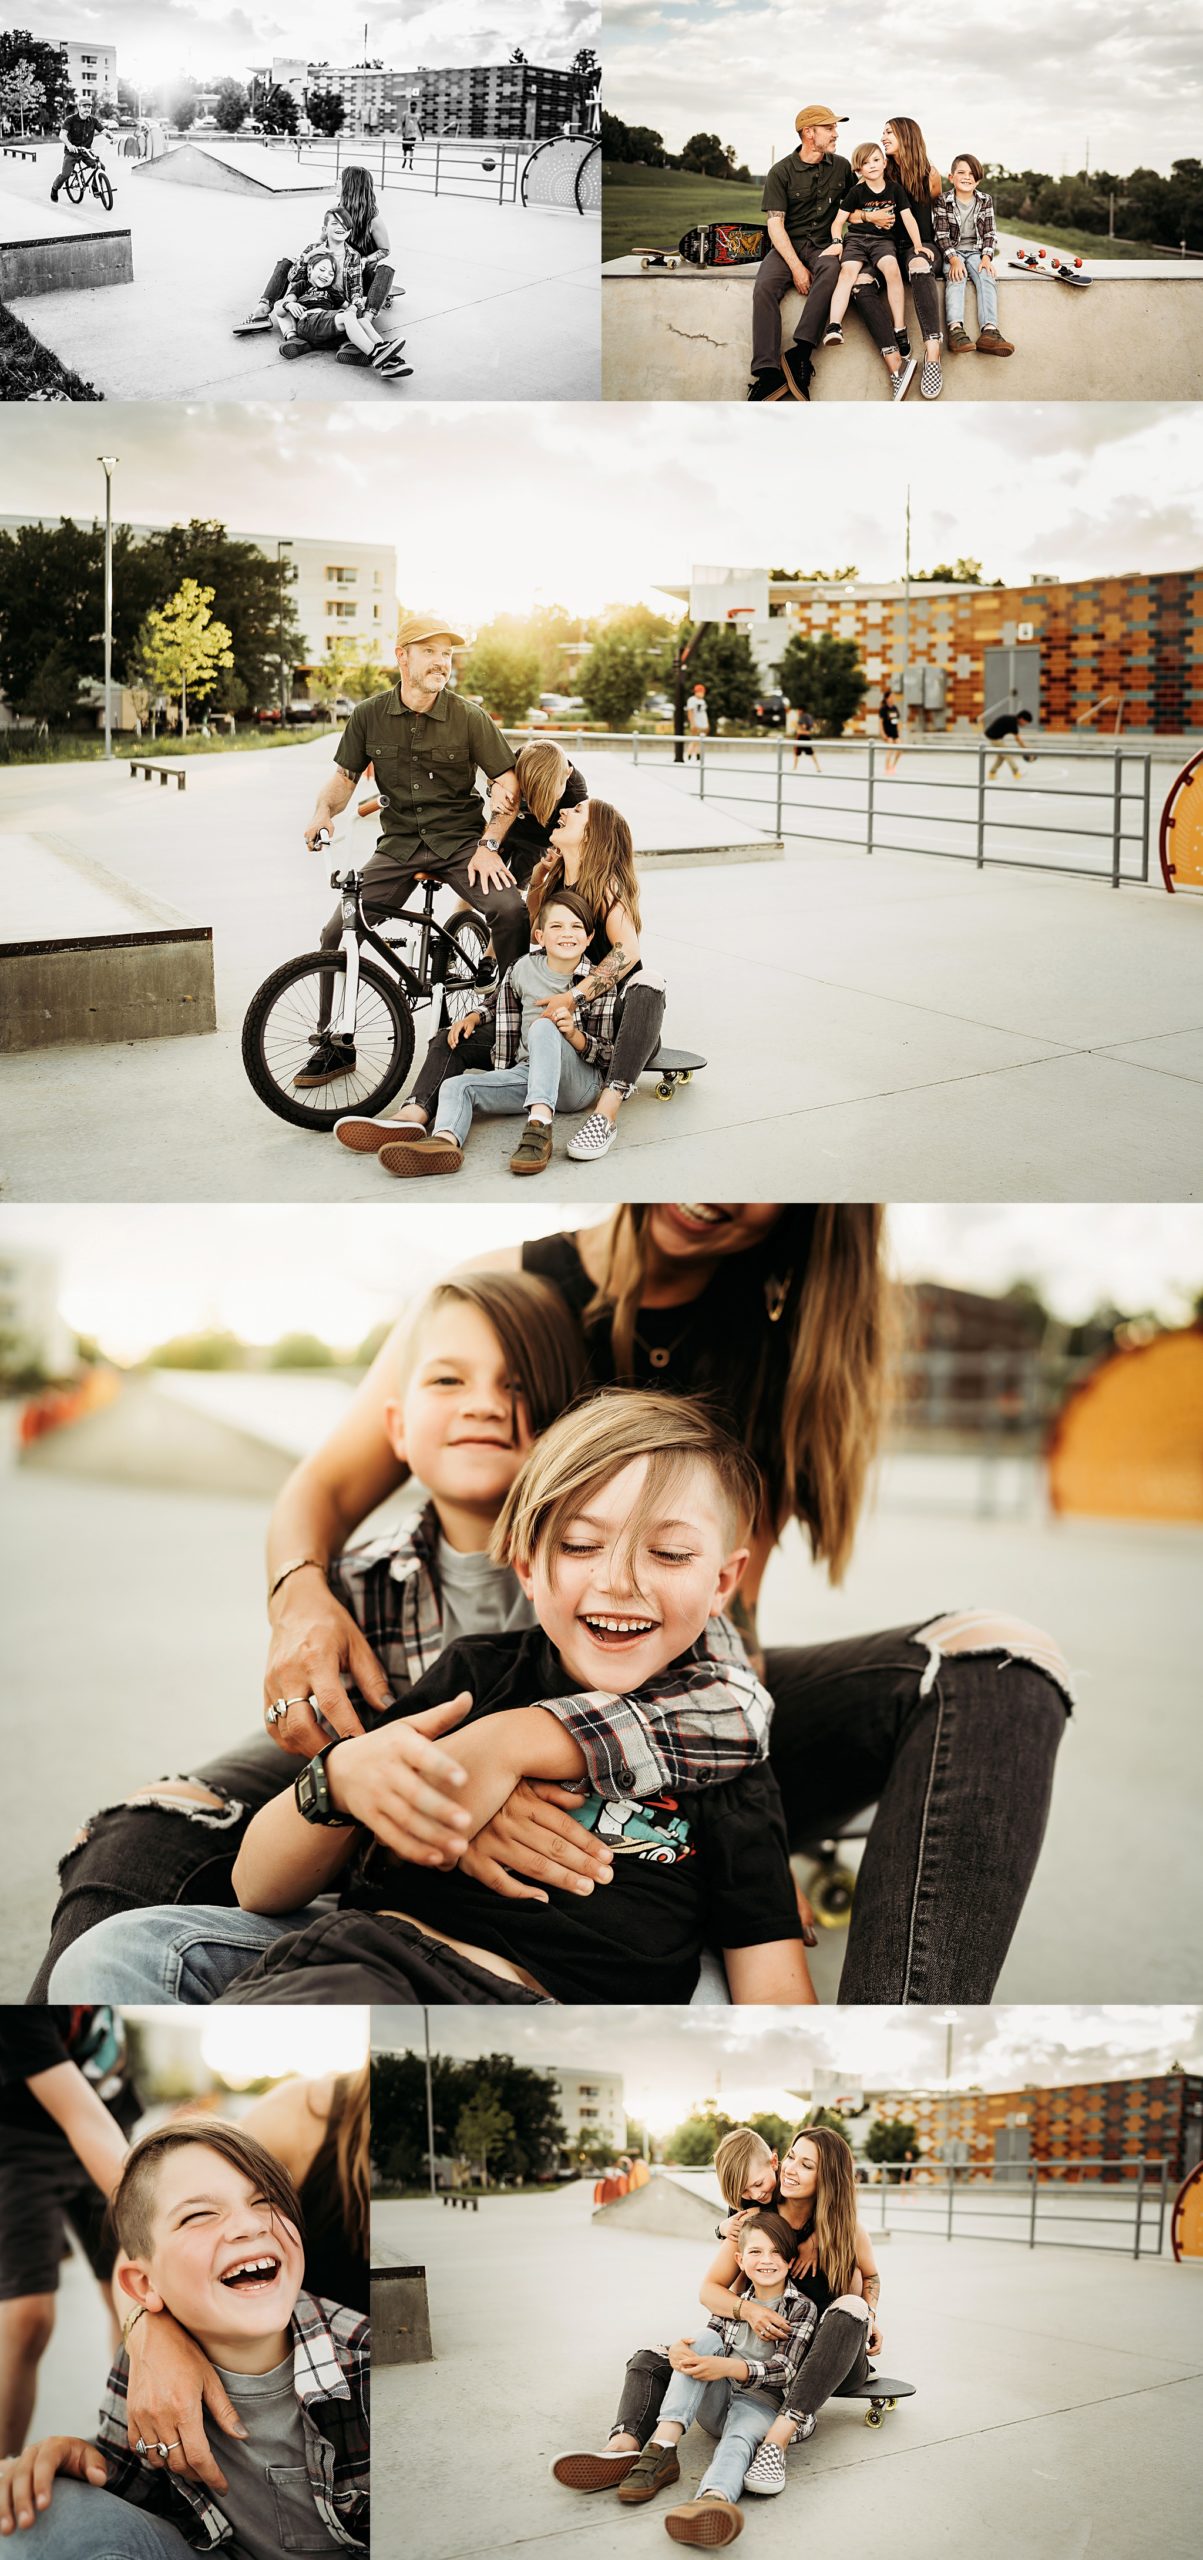 alex morris design family photographer denver colorado, skate park, skateboard